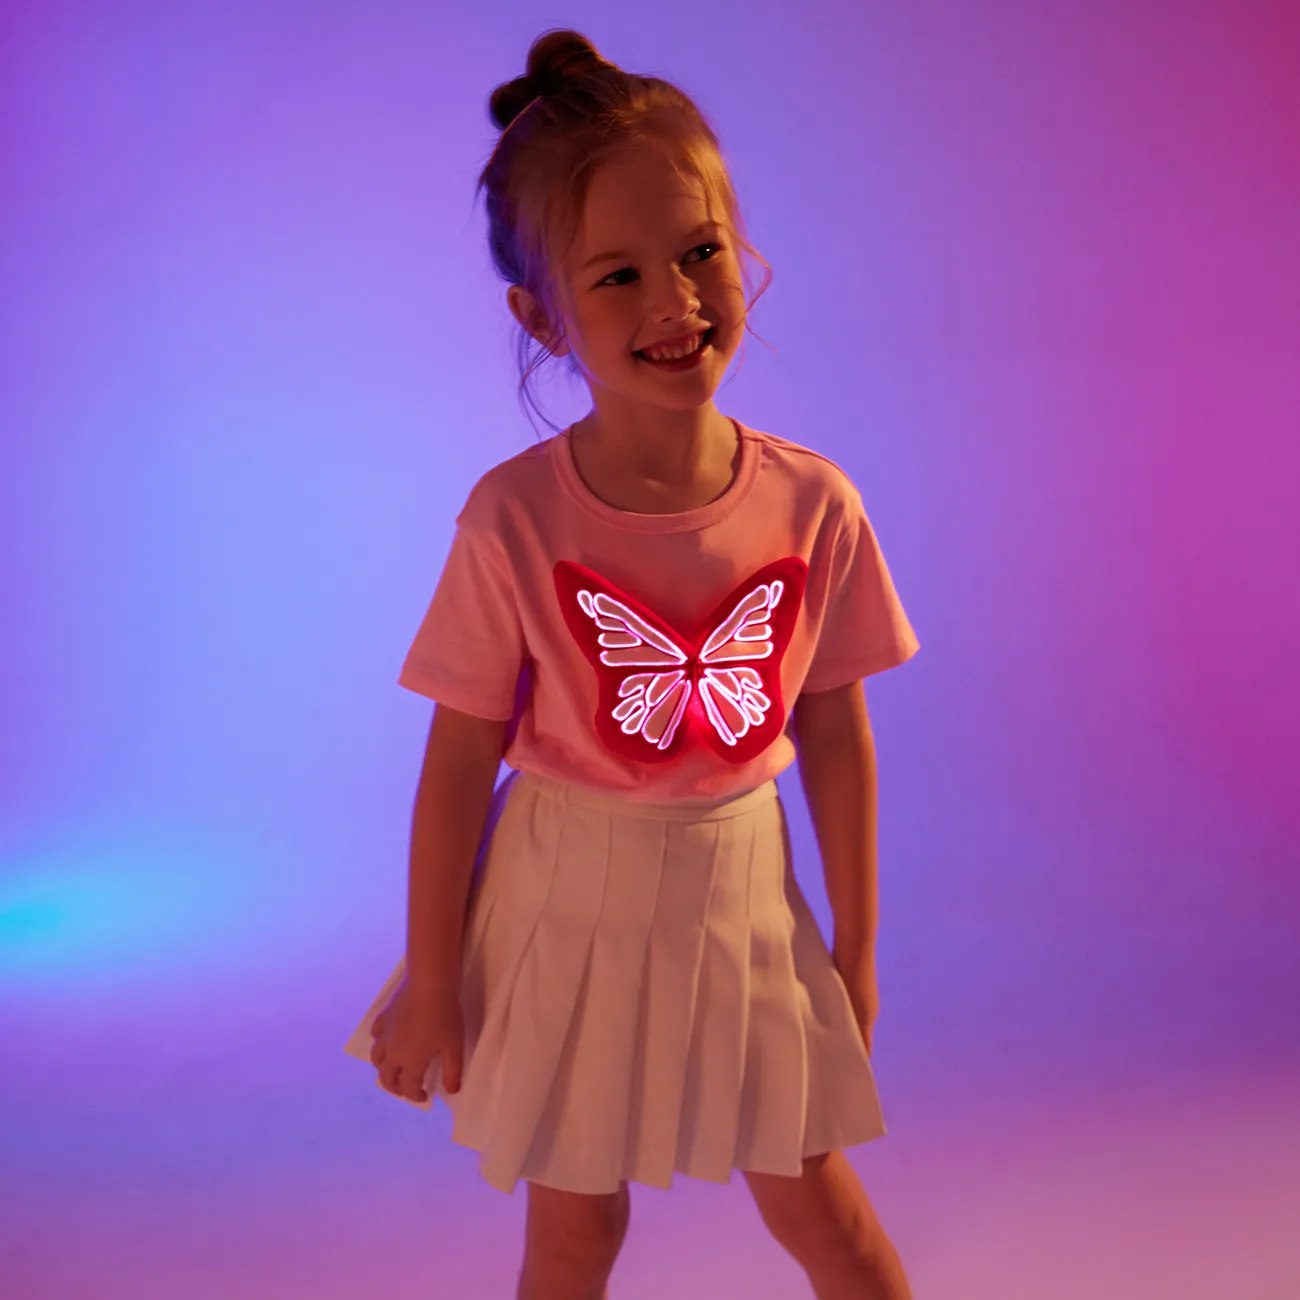 小童 女 立體造型 甜美 蝴蝶 短袖 T恤 粉色 big image 1